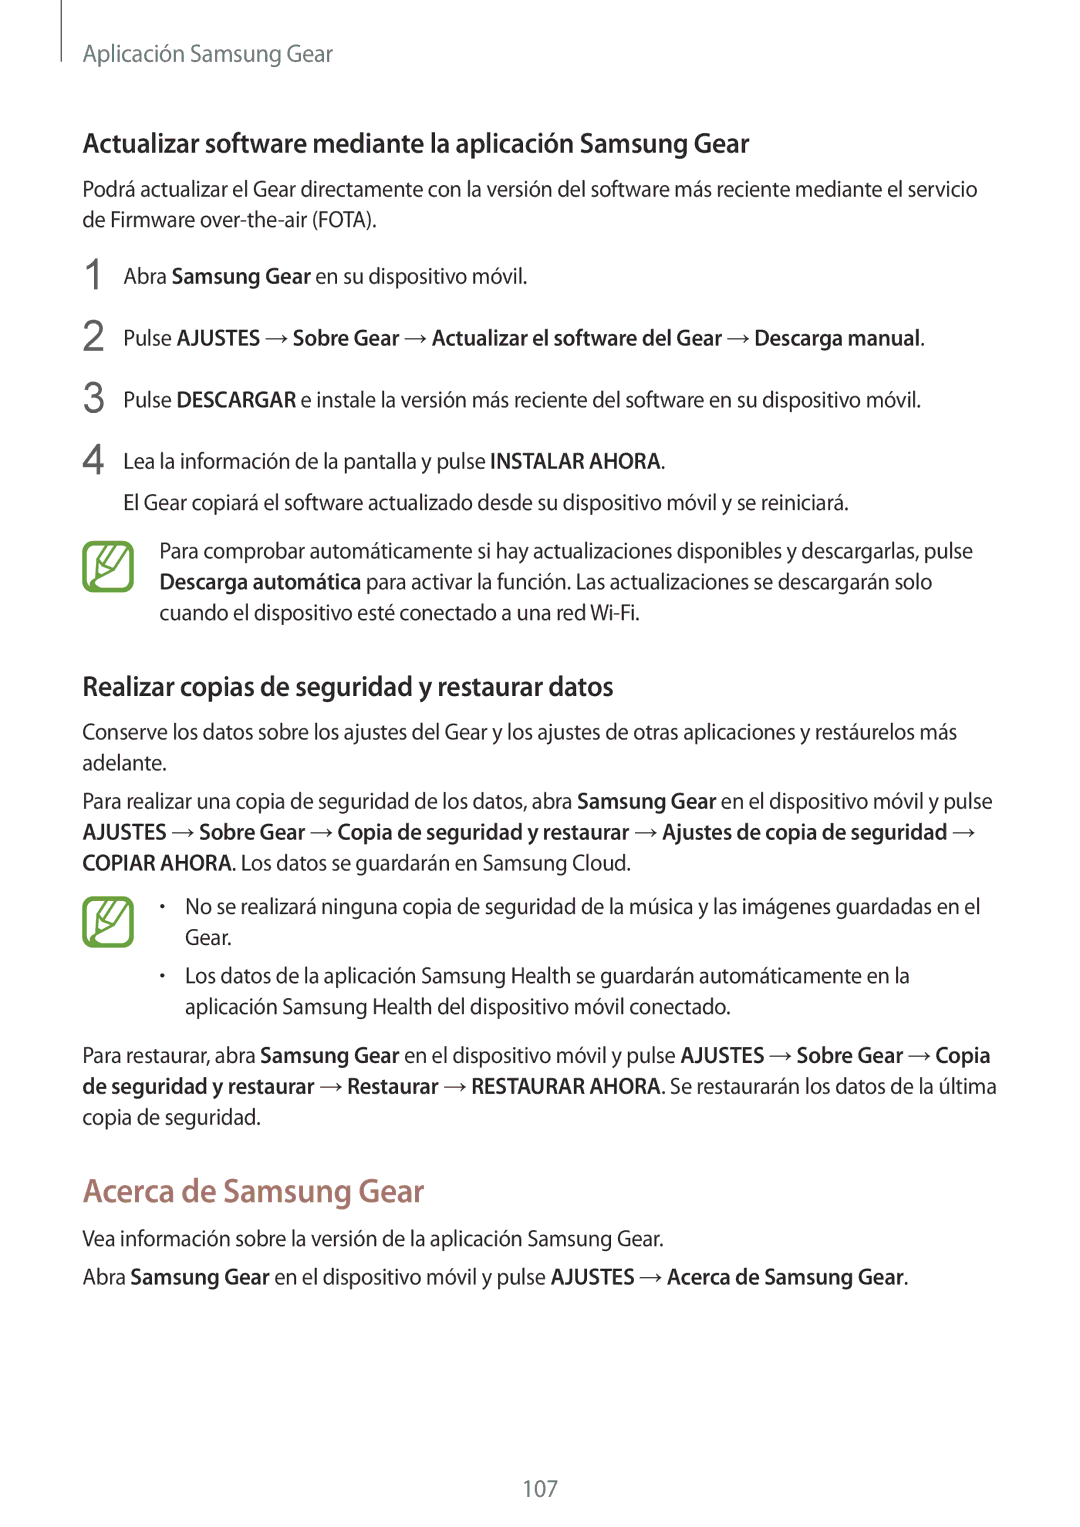 Samsung SM-R600NZKAPHE, SM-R600NZBAPHE Acerca de Samsung Gear, Actualizar software mediante la aplicación Samsung Gear 